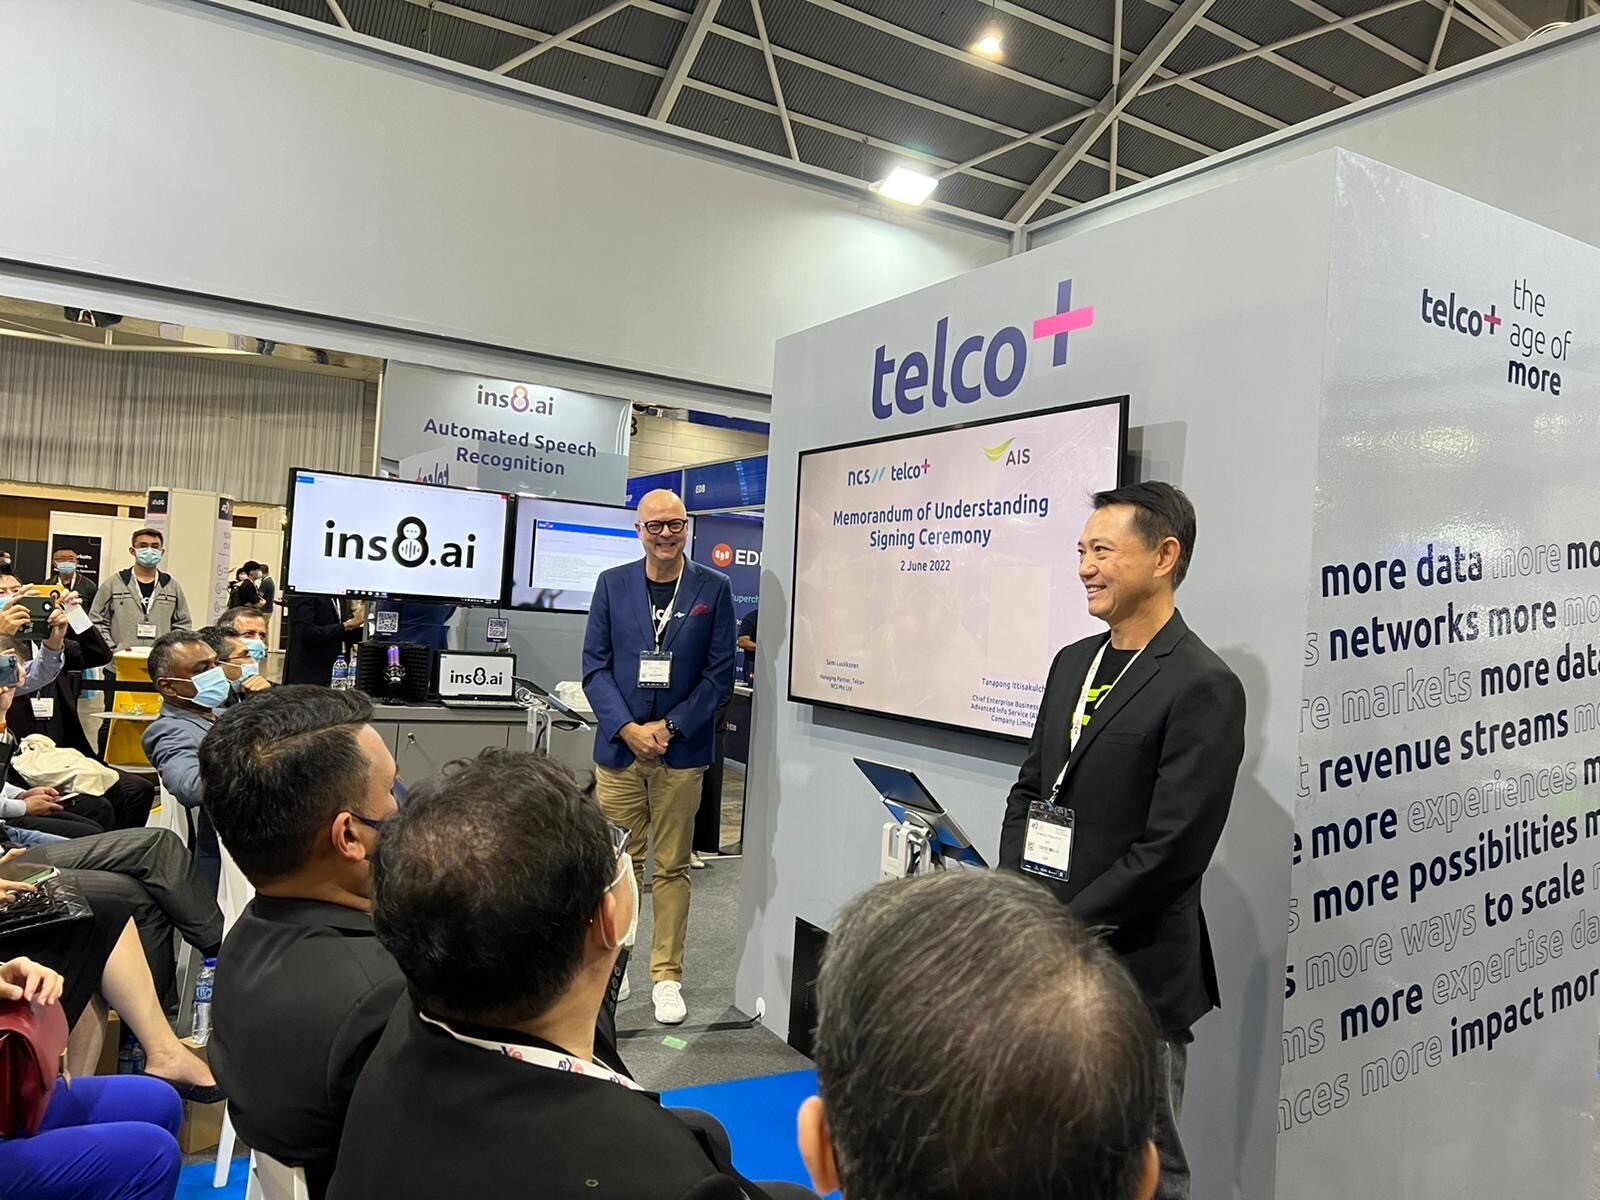 NCS Telco+ และ AIS ผนึกกำลังร่วมขับเคลื่อนการเปลี่ยนแปลงของผู้ประกอบการไทย ด้วยศักยภาพจากดิจิทัล เทคโนโลยี